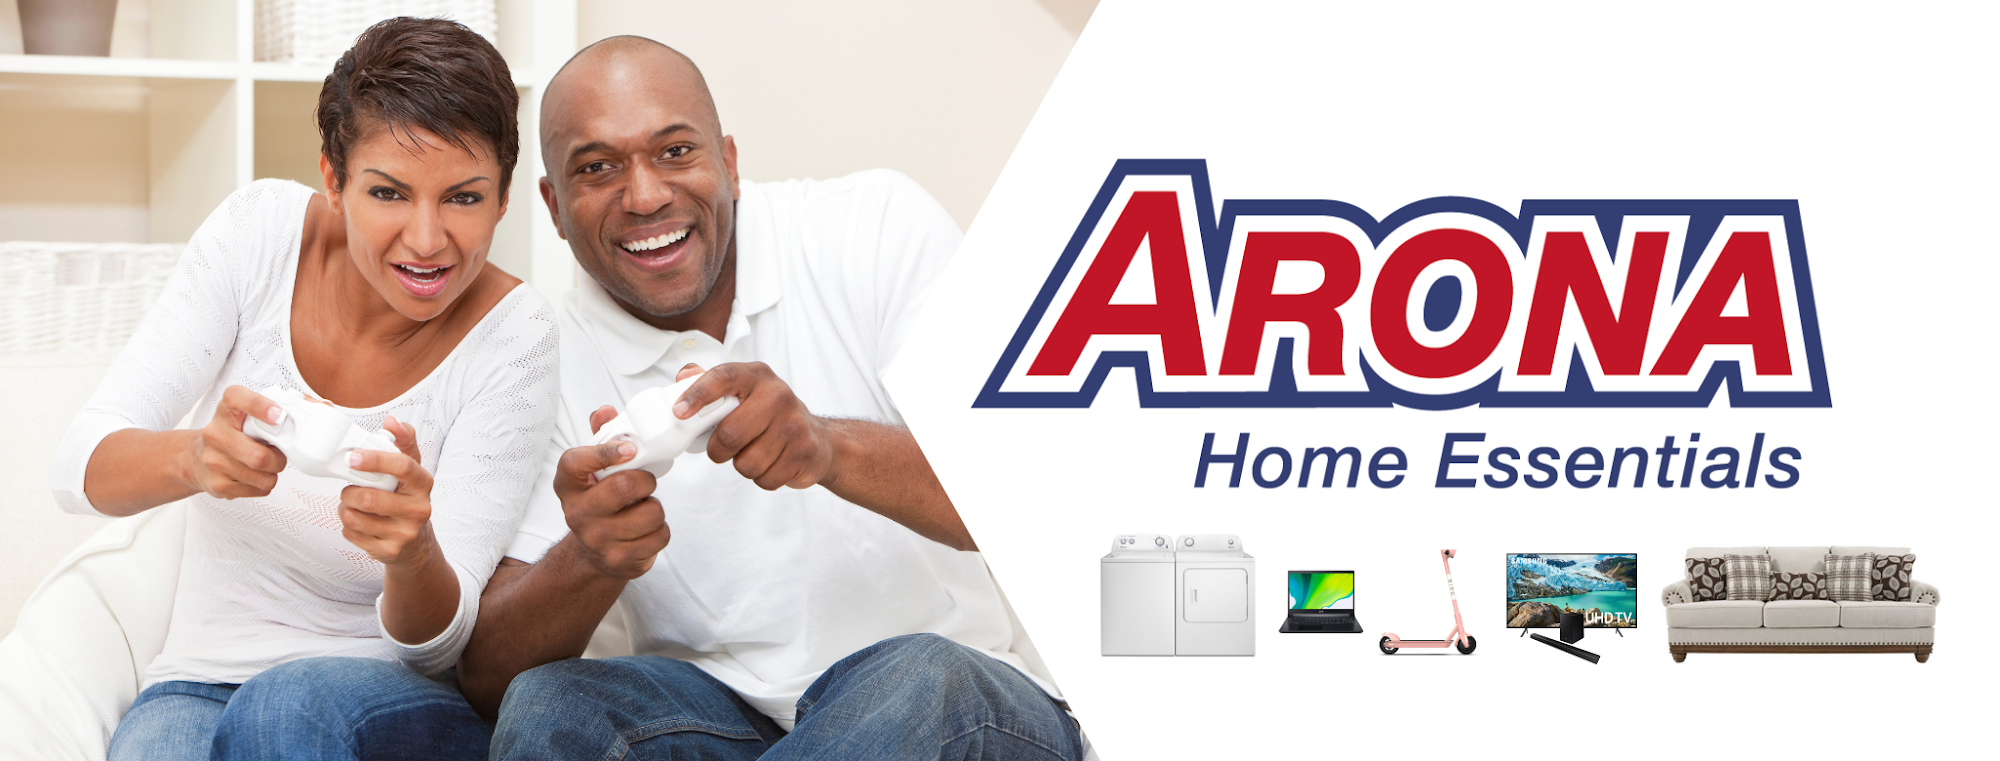 Arona Home Essentials Peoria